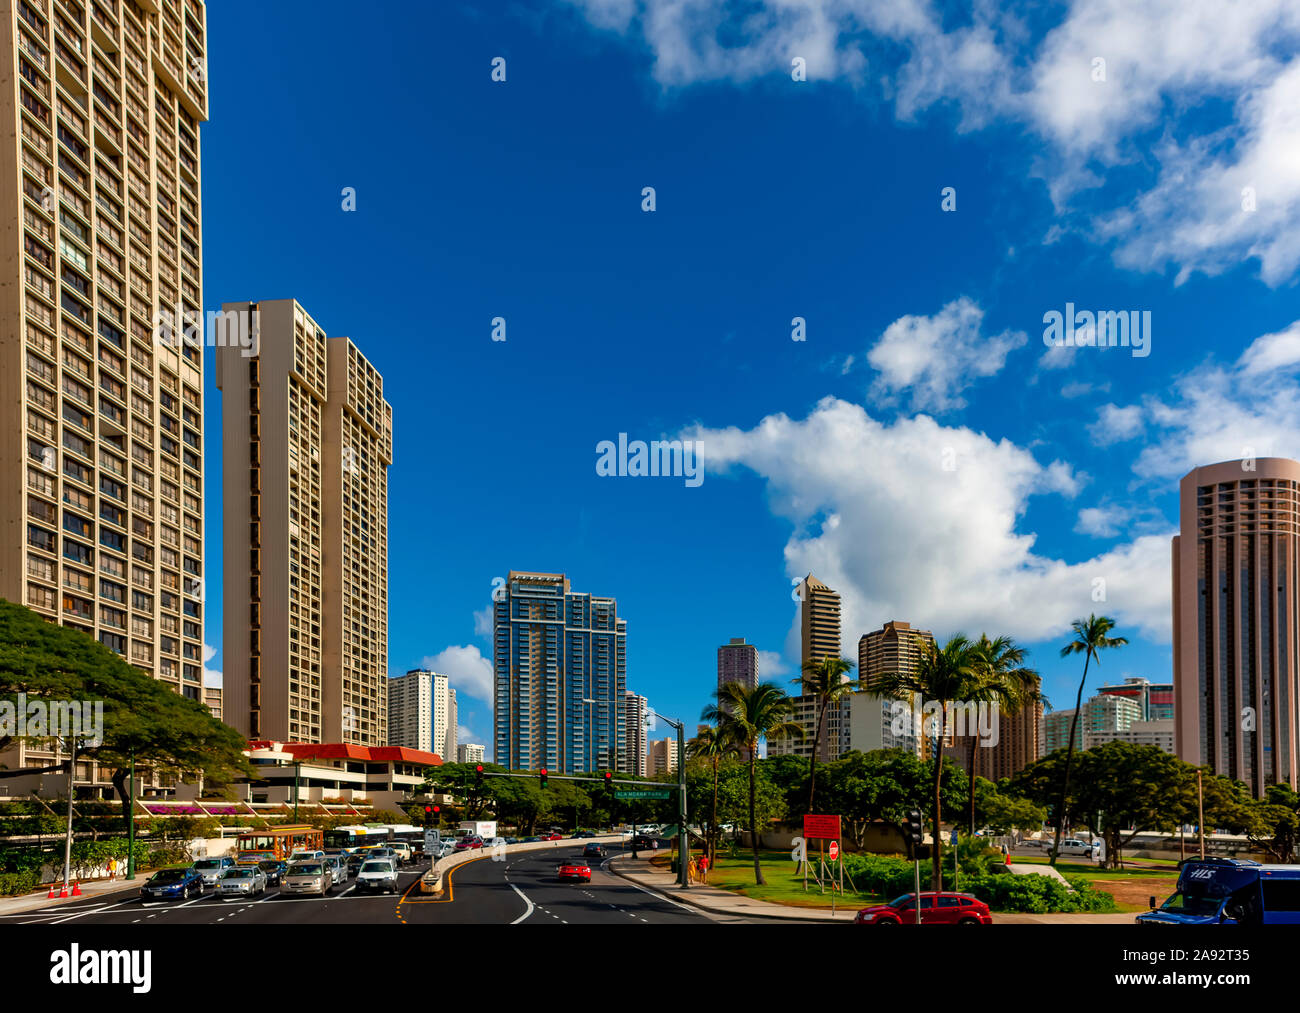 Carreteras transitadas en la ciudad tropical hawaiana de Honololu; Honolulu, Oahu, Hawai, Estados Unidos de América Foto de stock